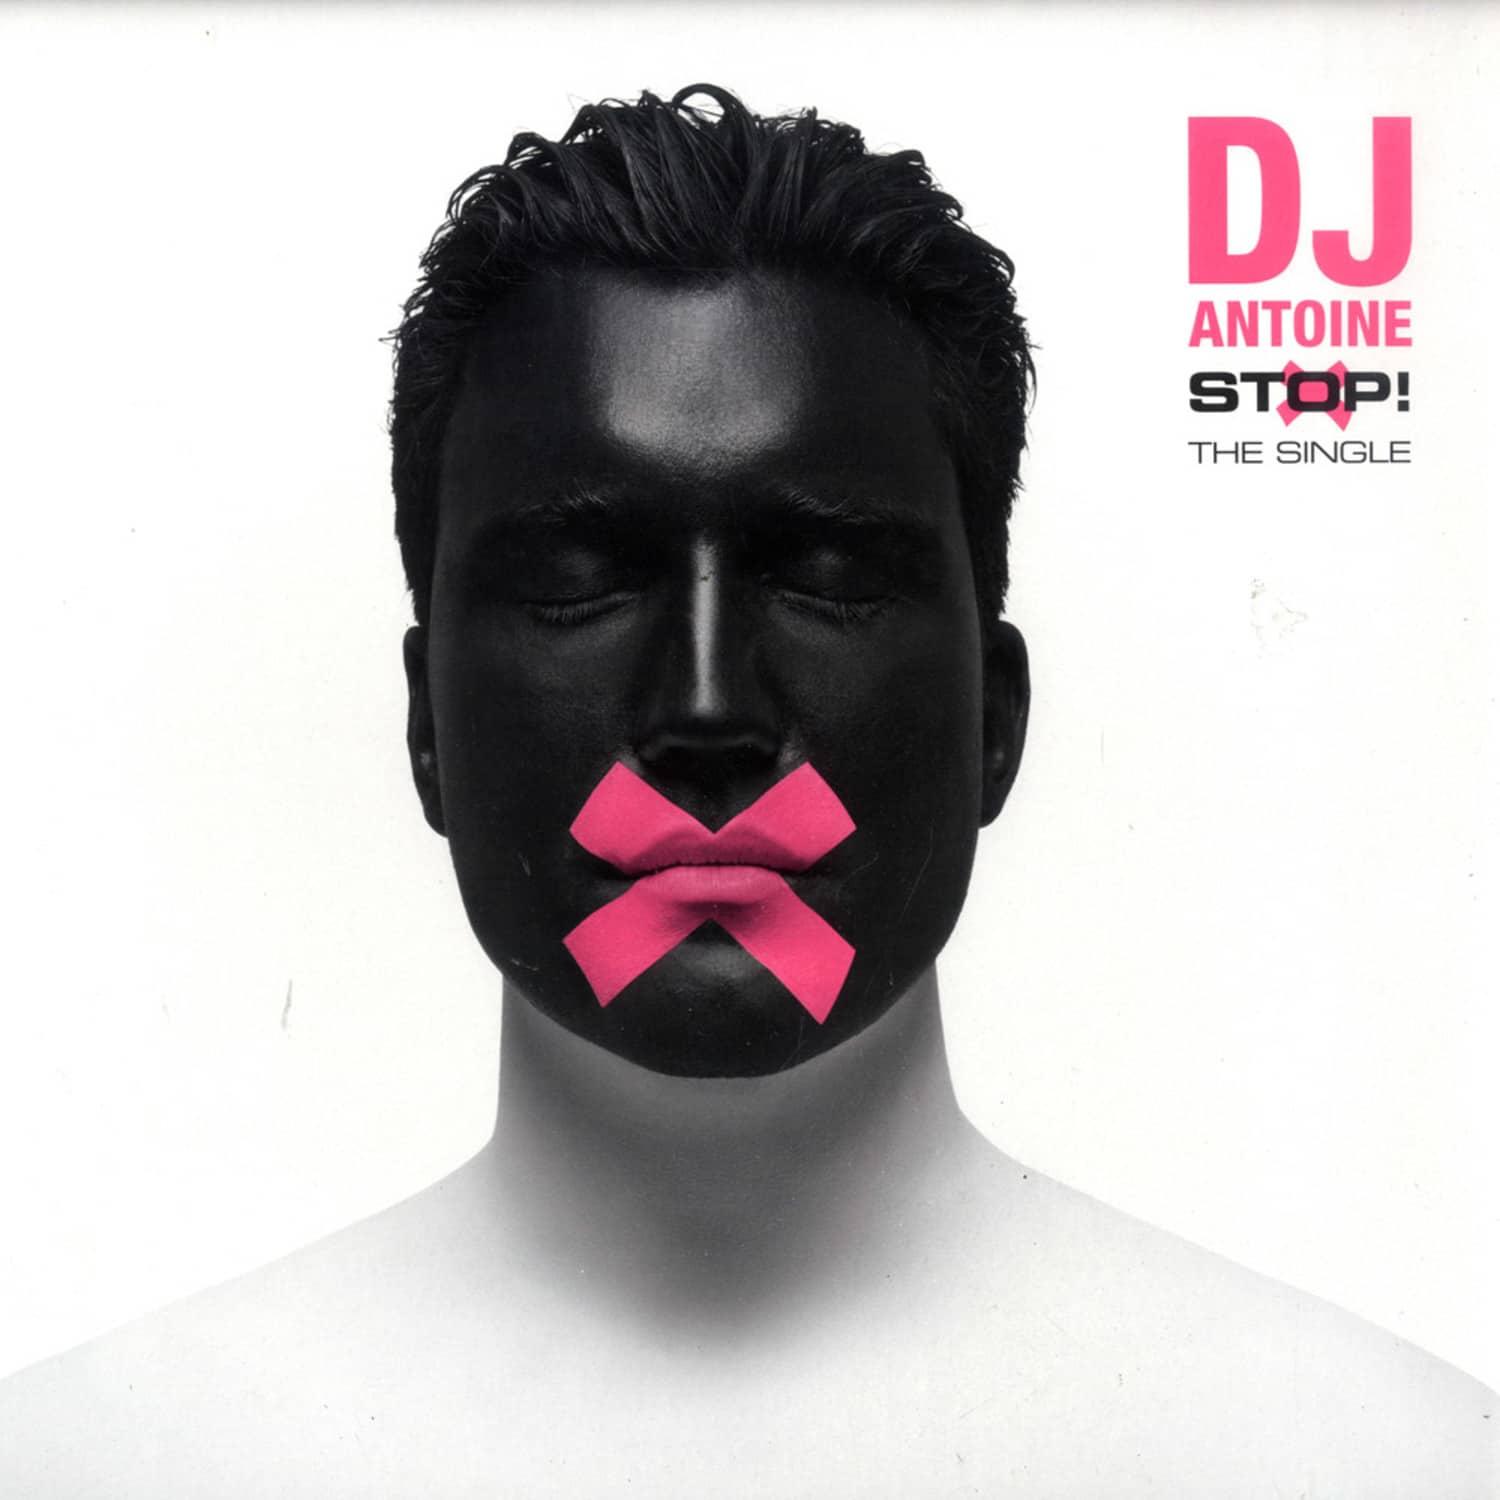 DJ Antoine - STOP!